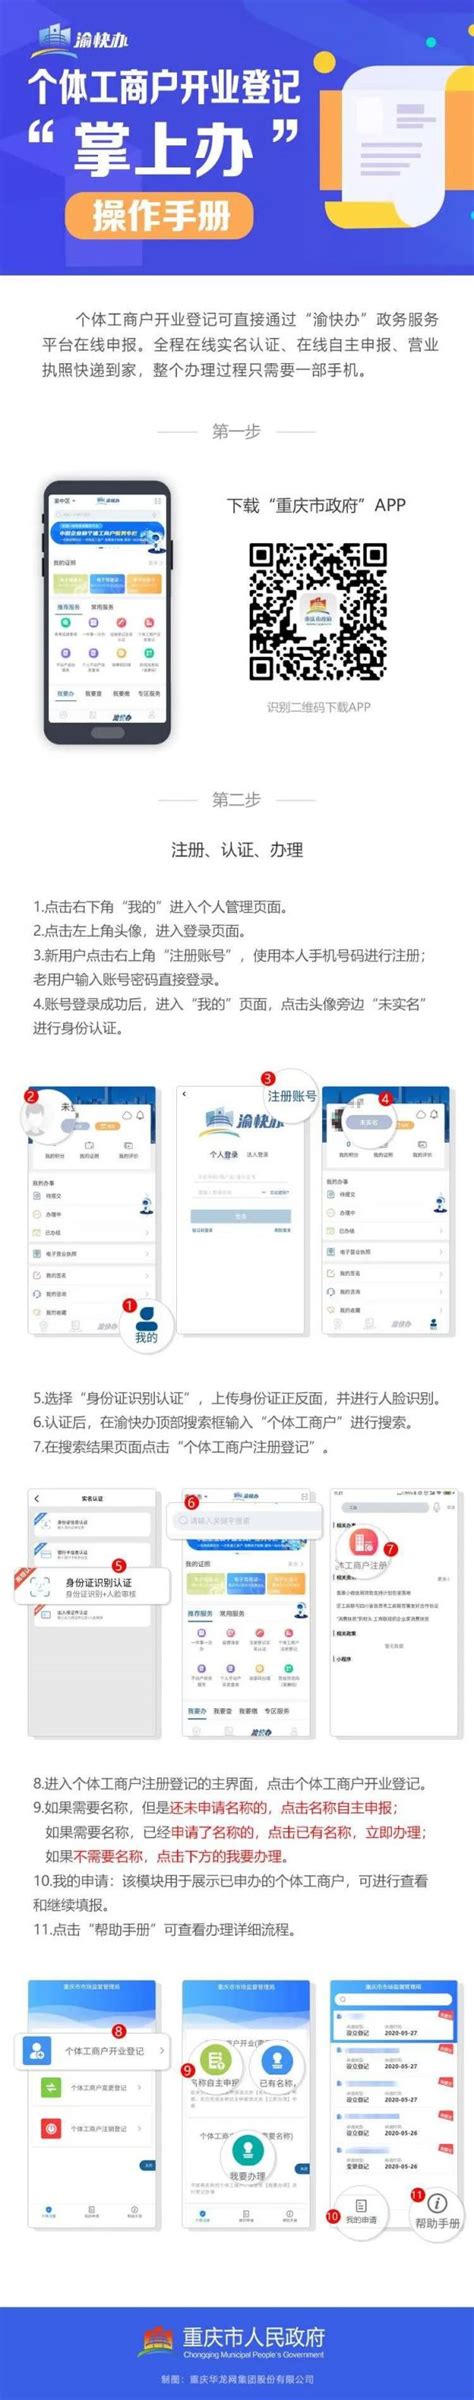 重庆营业执照申请流程线上